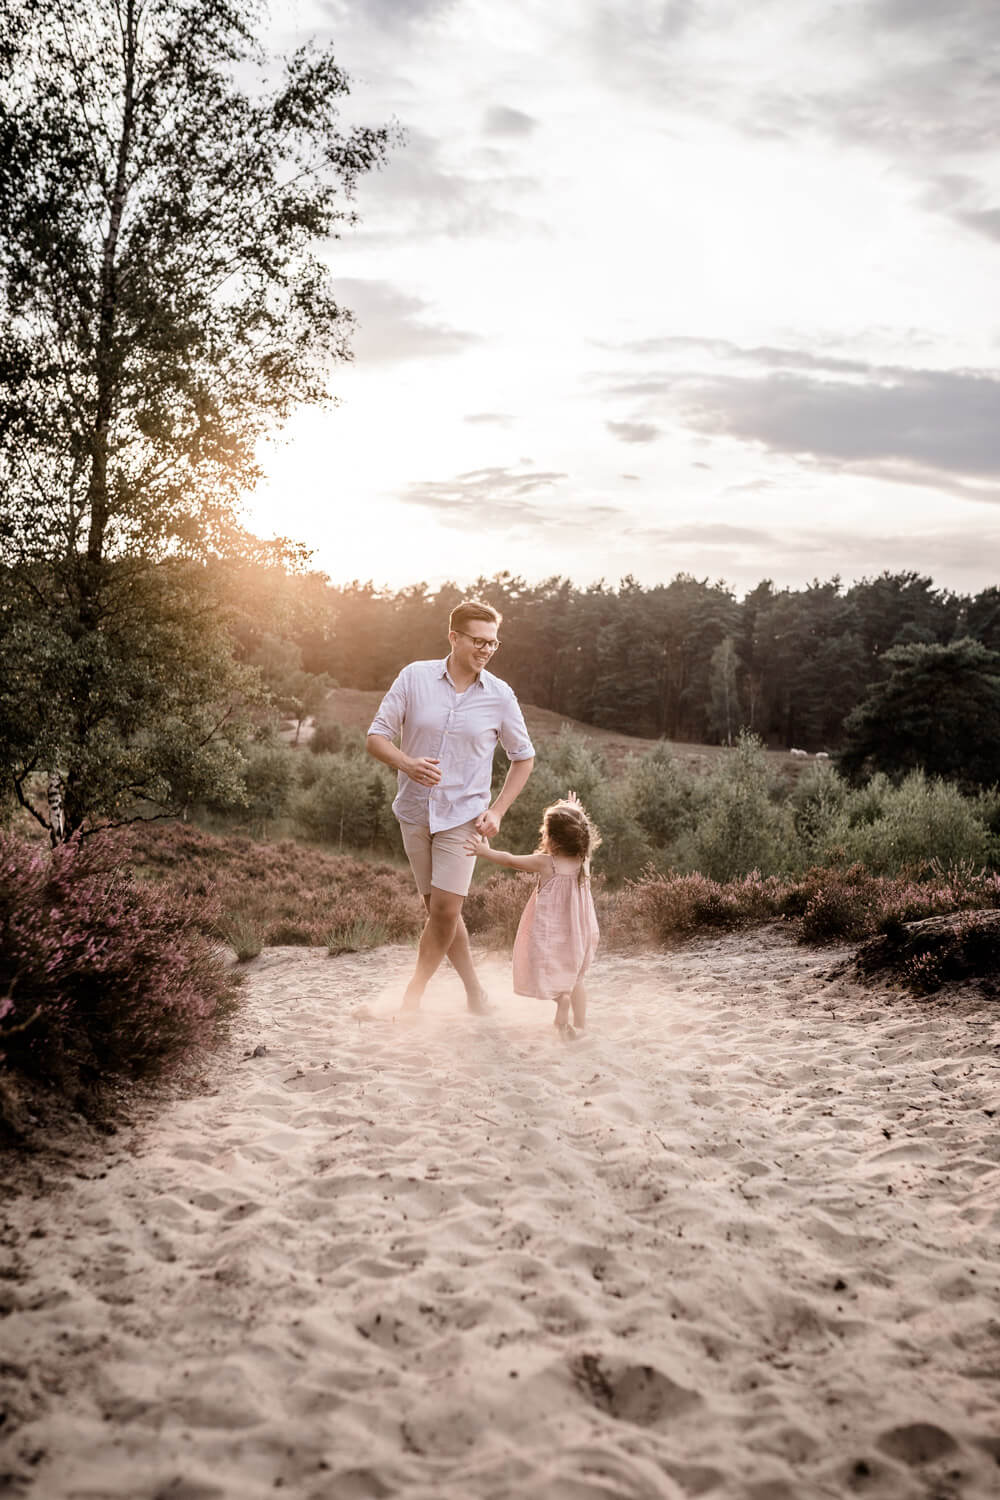 Vater spielt mit Tochter fangen im Sand in Heide, Mädchen trägt Kleid, Sonnenuntergang während Familienshooting